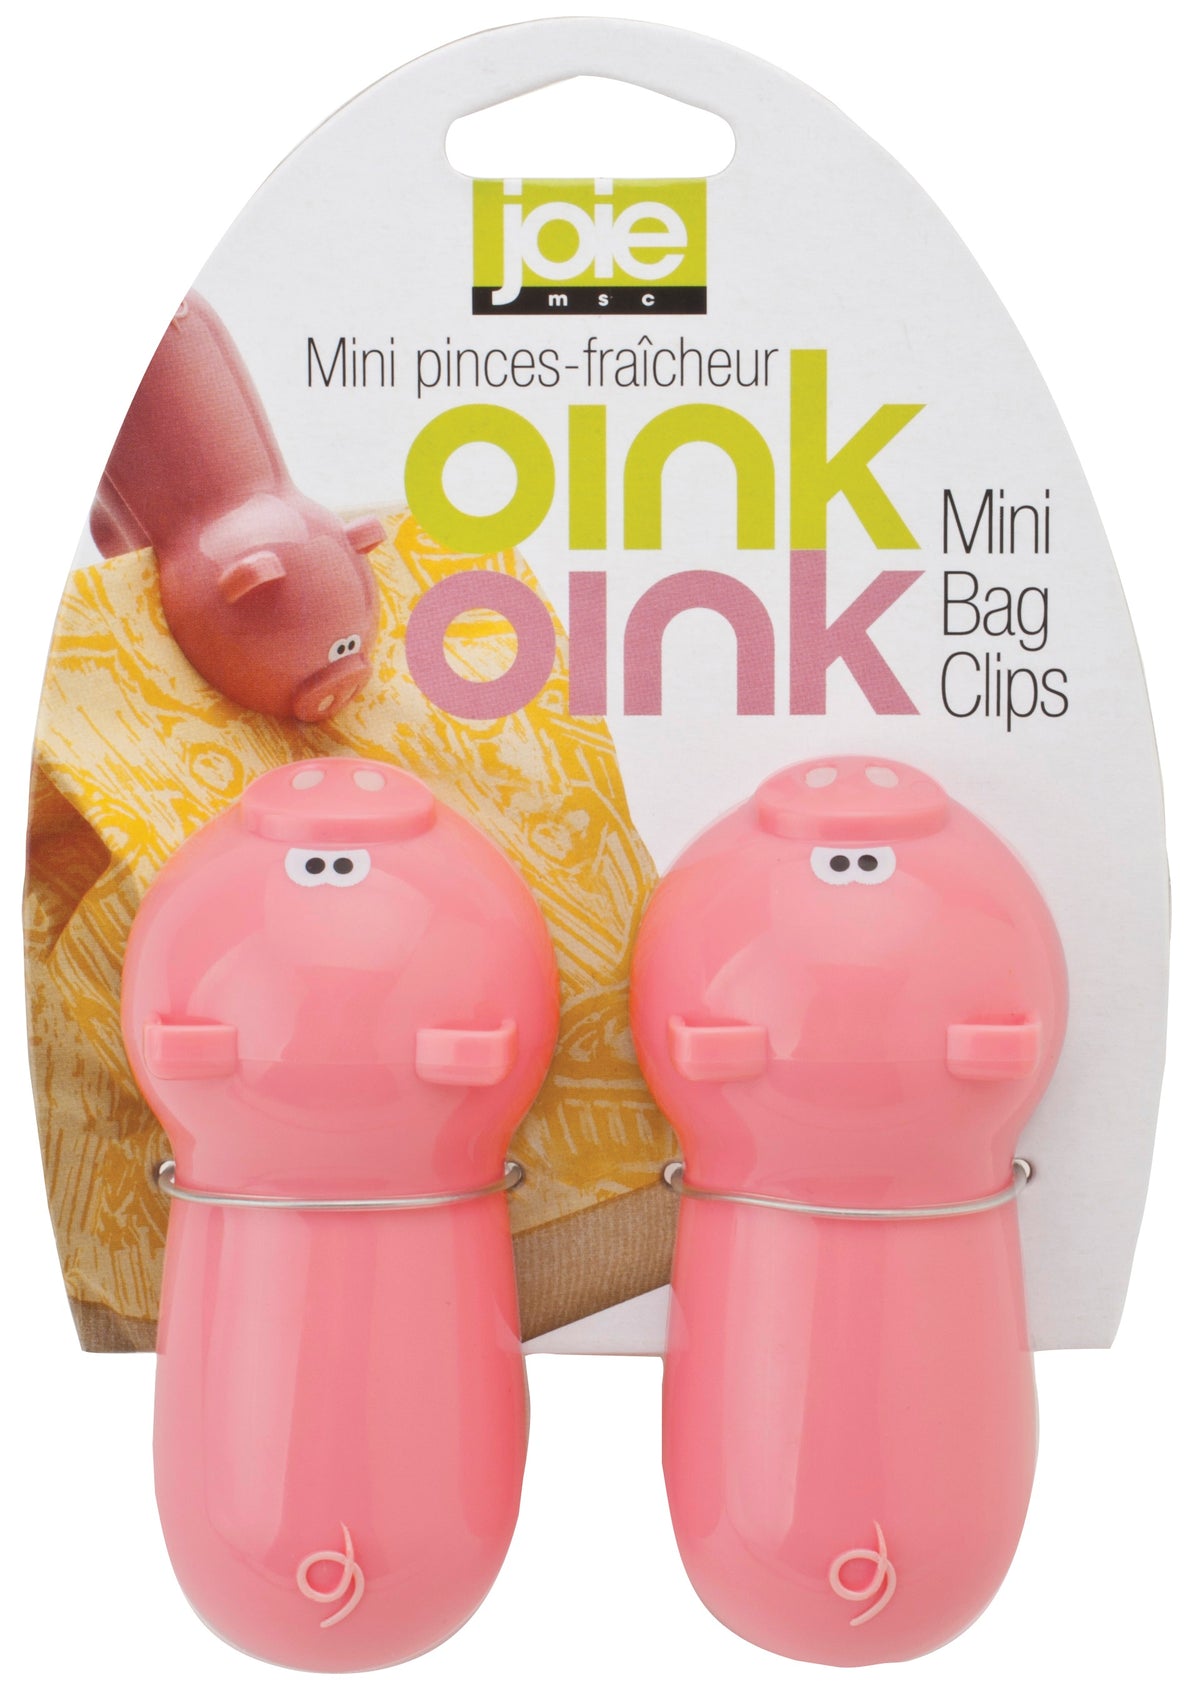 Joie MSC 78815 OinkOink Piggy Mini Bag Clips